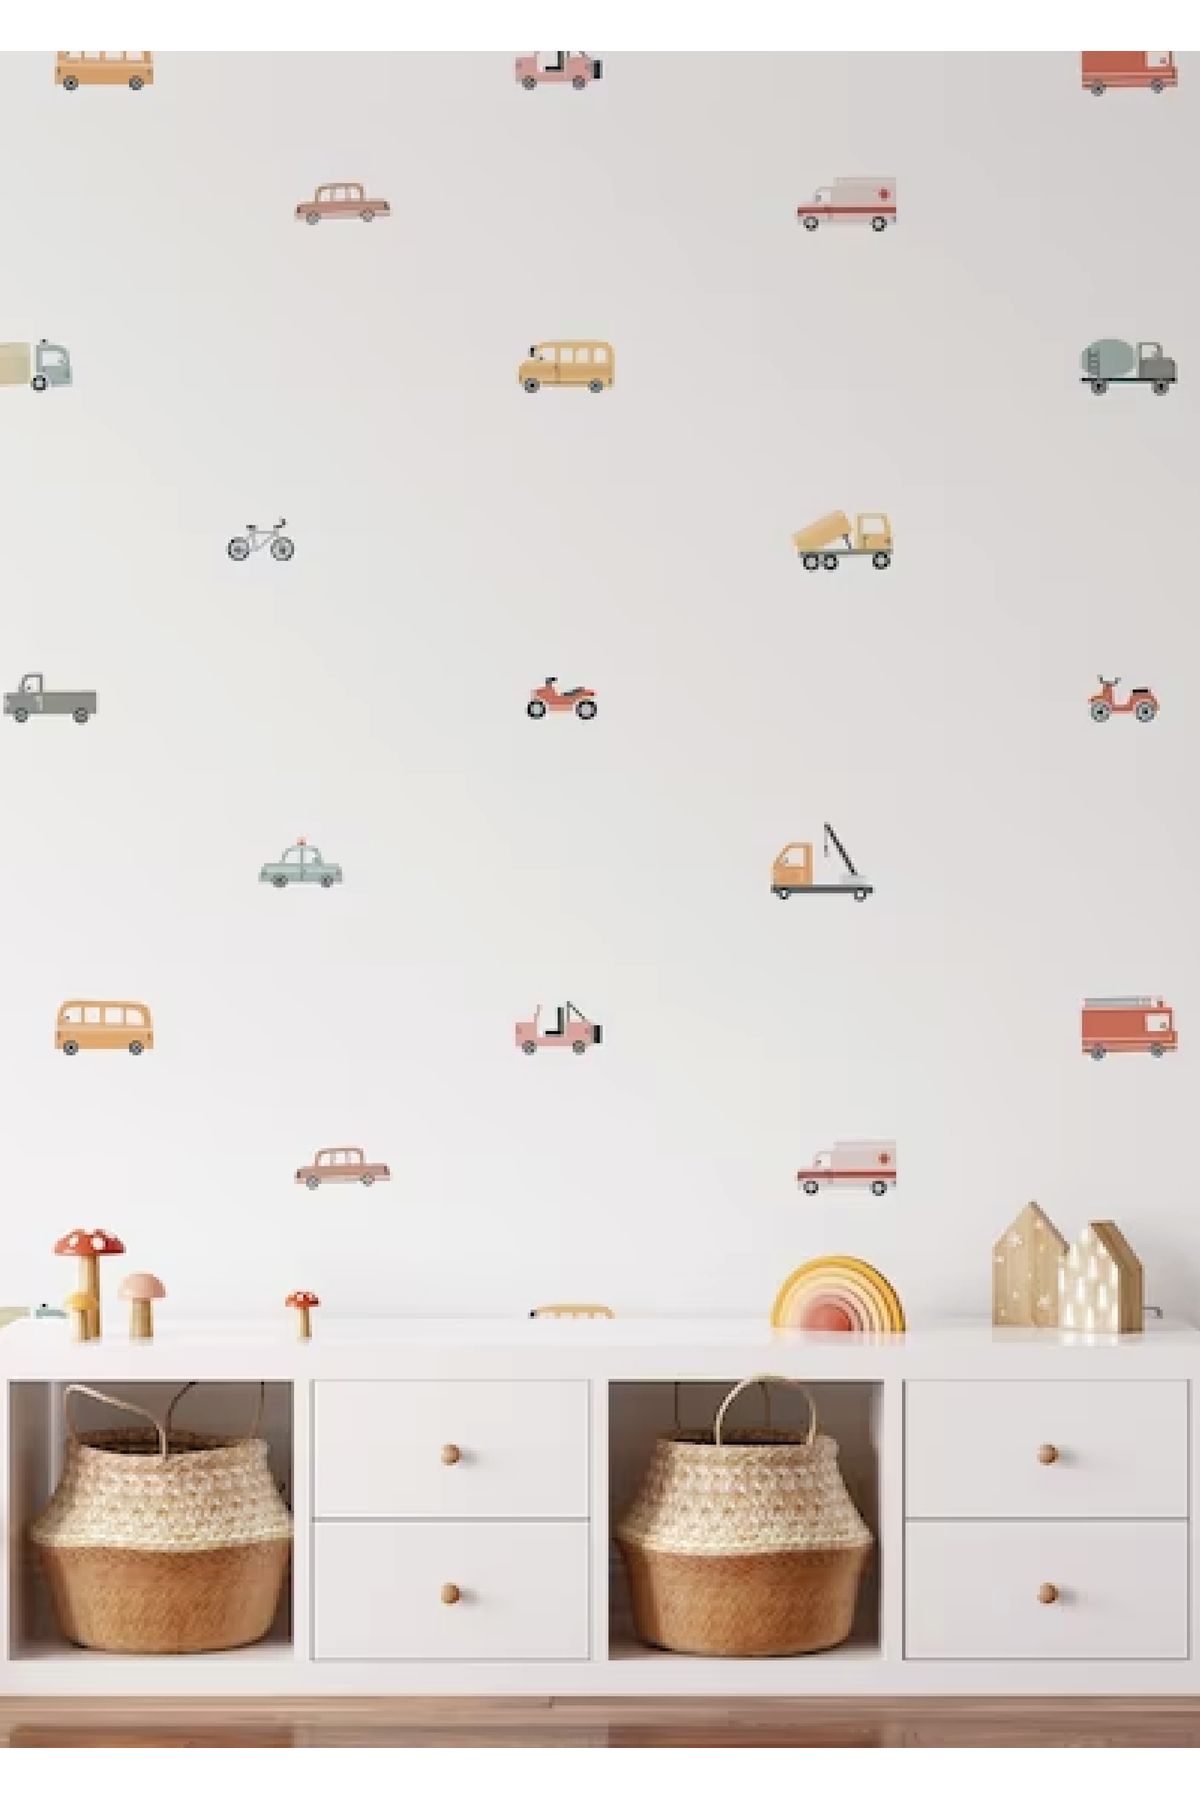 WALLHUMAN Ulaşım Araçları Çocuk Odası Duvar Stickerı